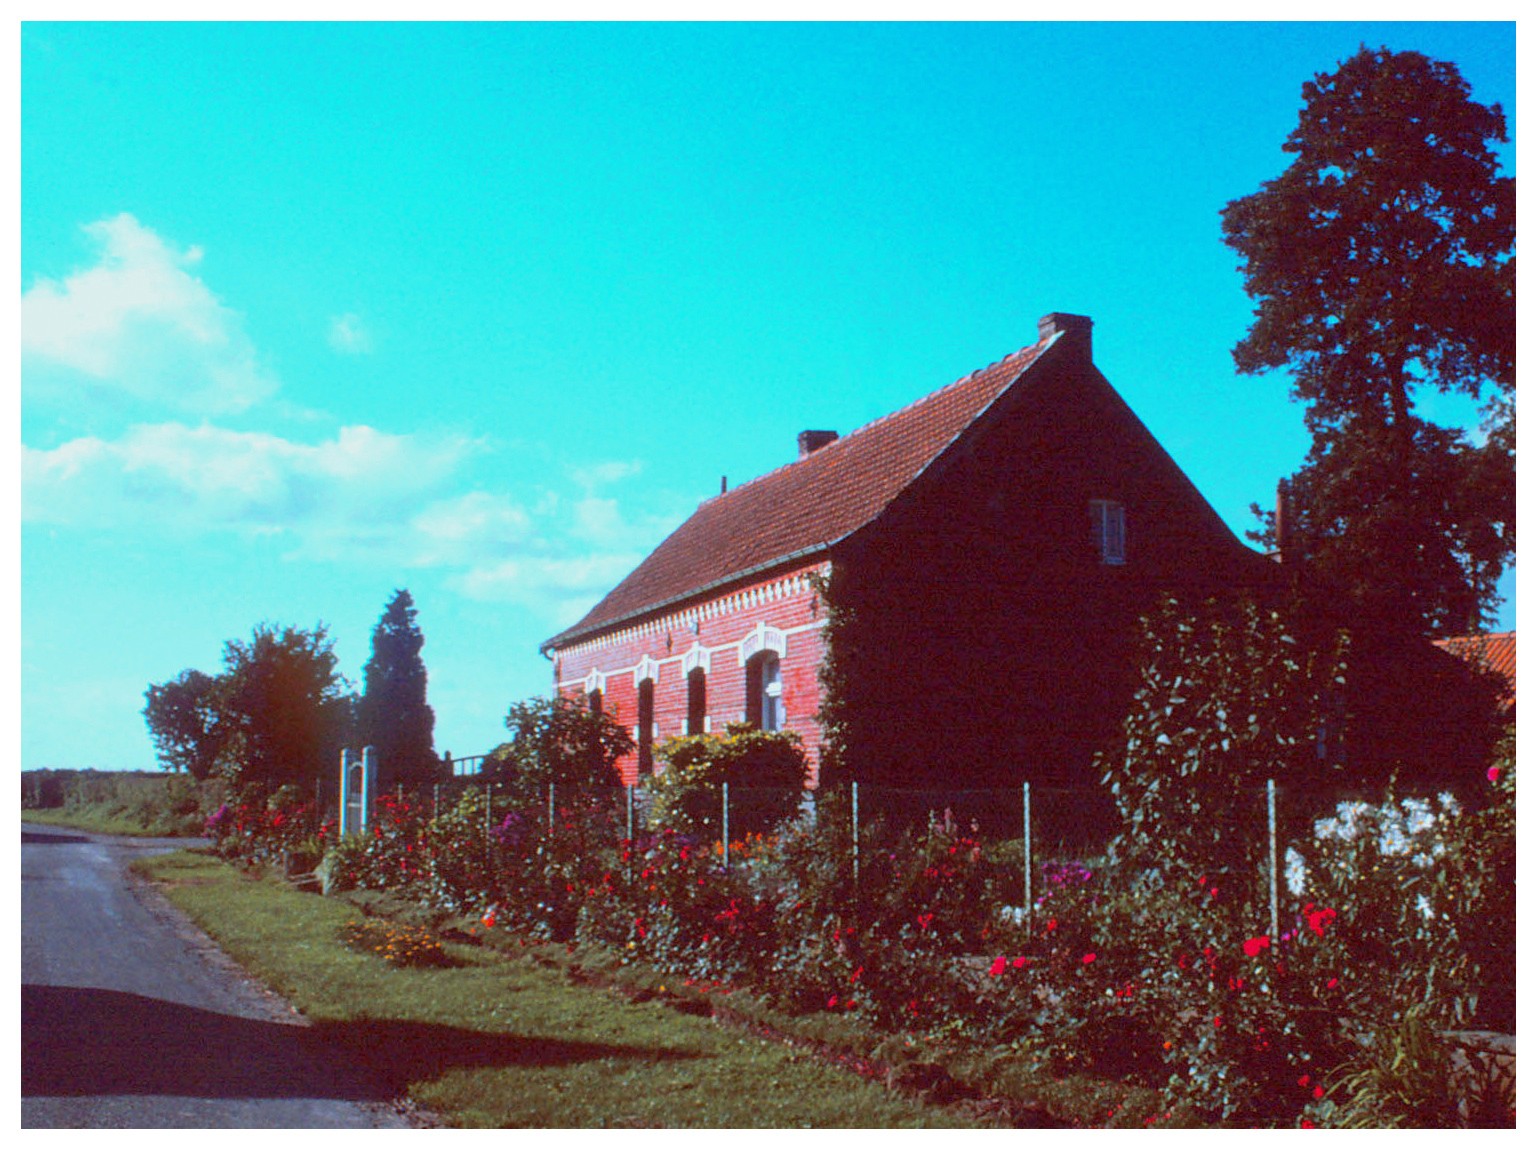 Village Fleuri